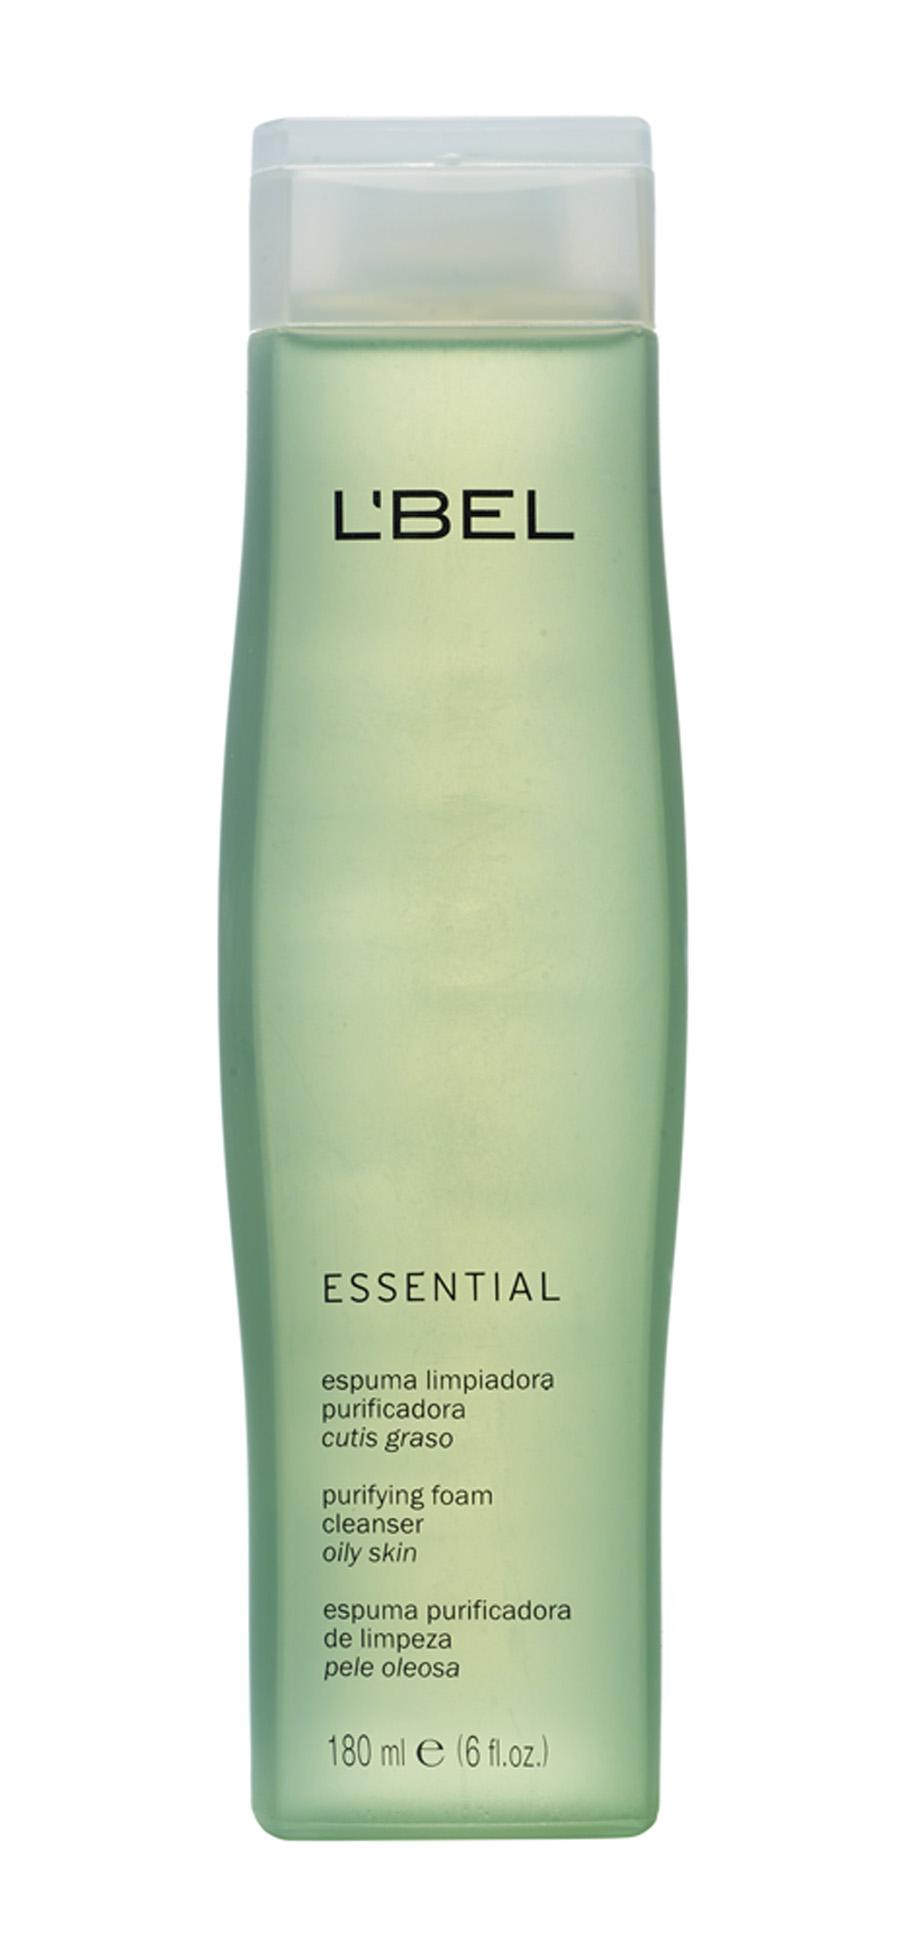 Essential Espuma Purificadora, R$ 31: além de limpar,  controla o brilho e a oleosidade da pele. L’Bel 0800-7788992